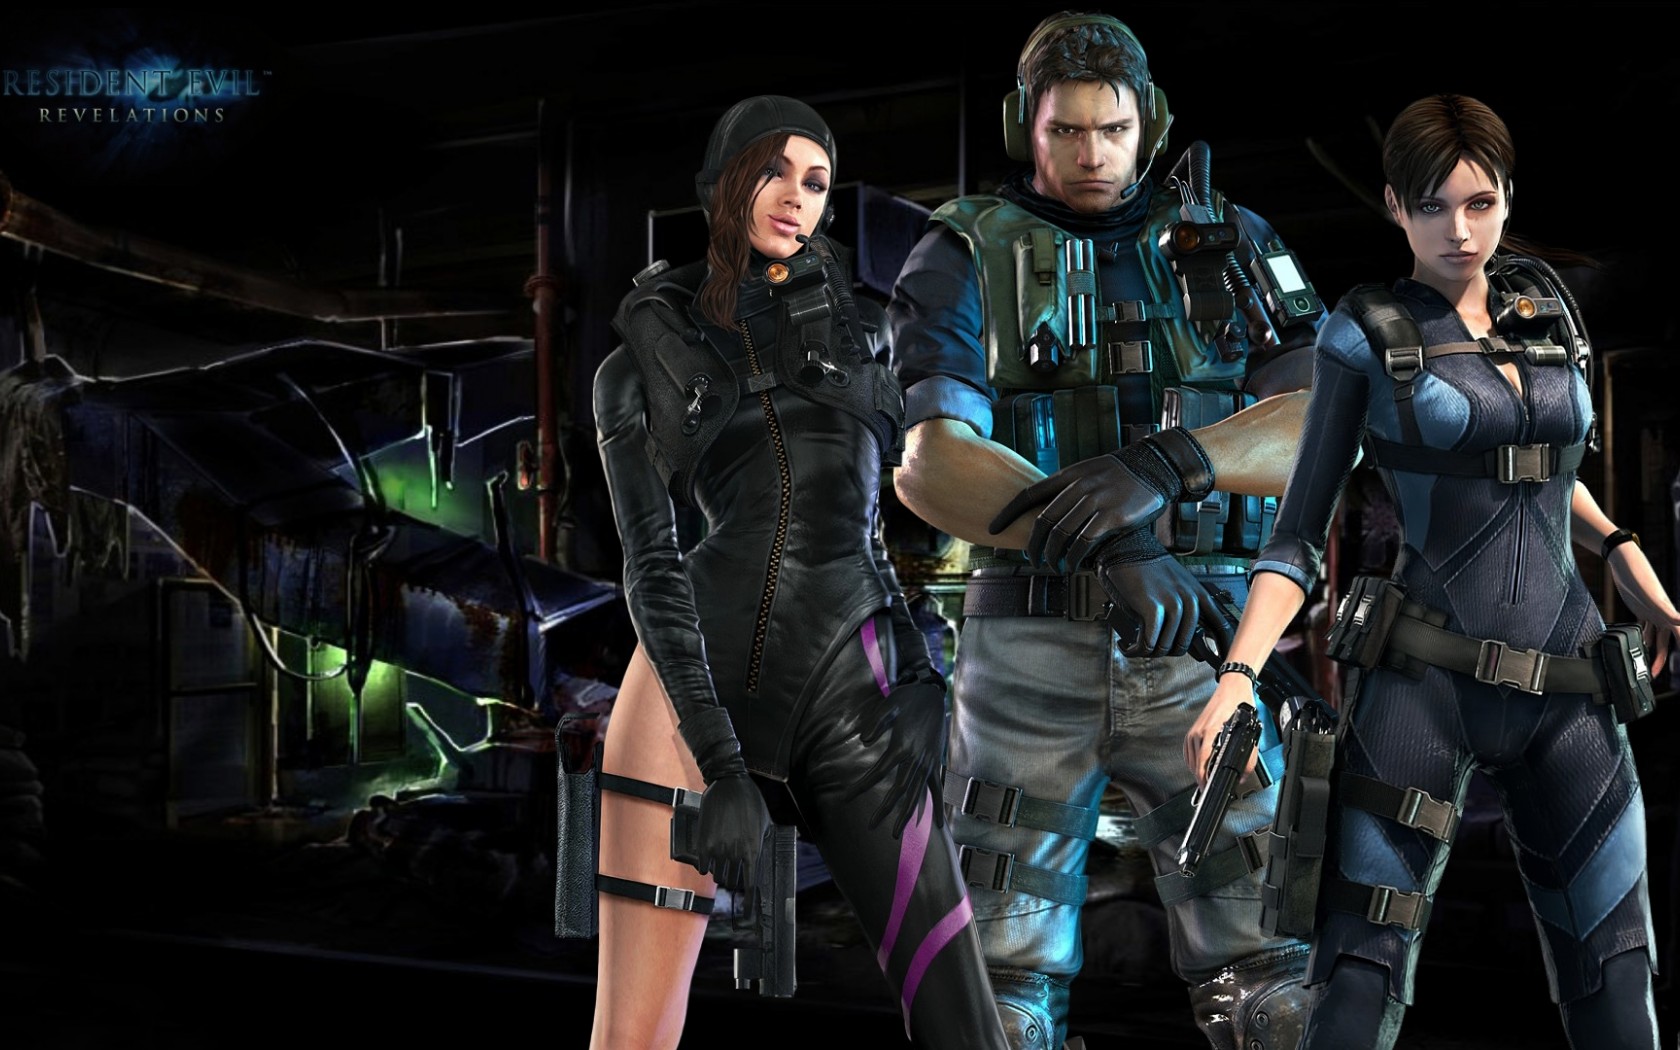 Jogamos! Nova demo de Resident Evil 2 Remake com Claire Redfield - REVIL